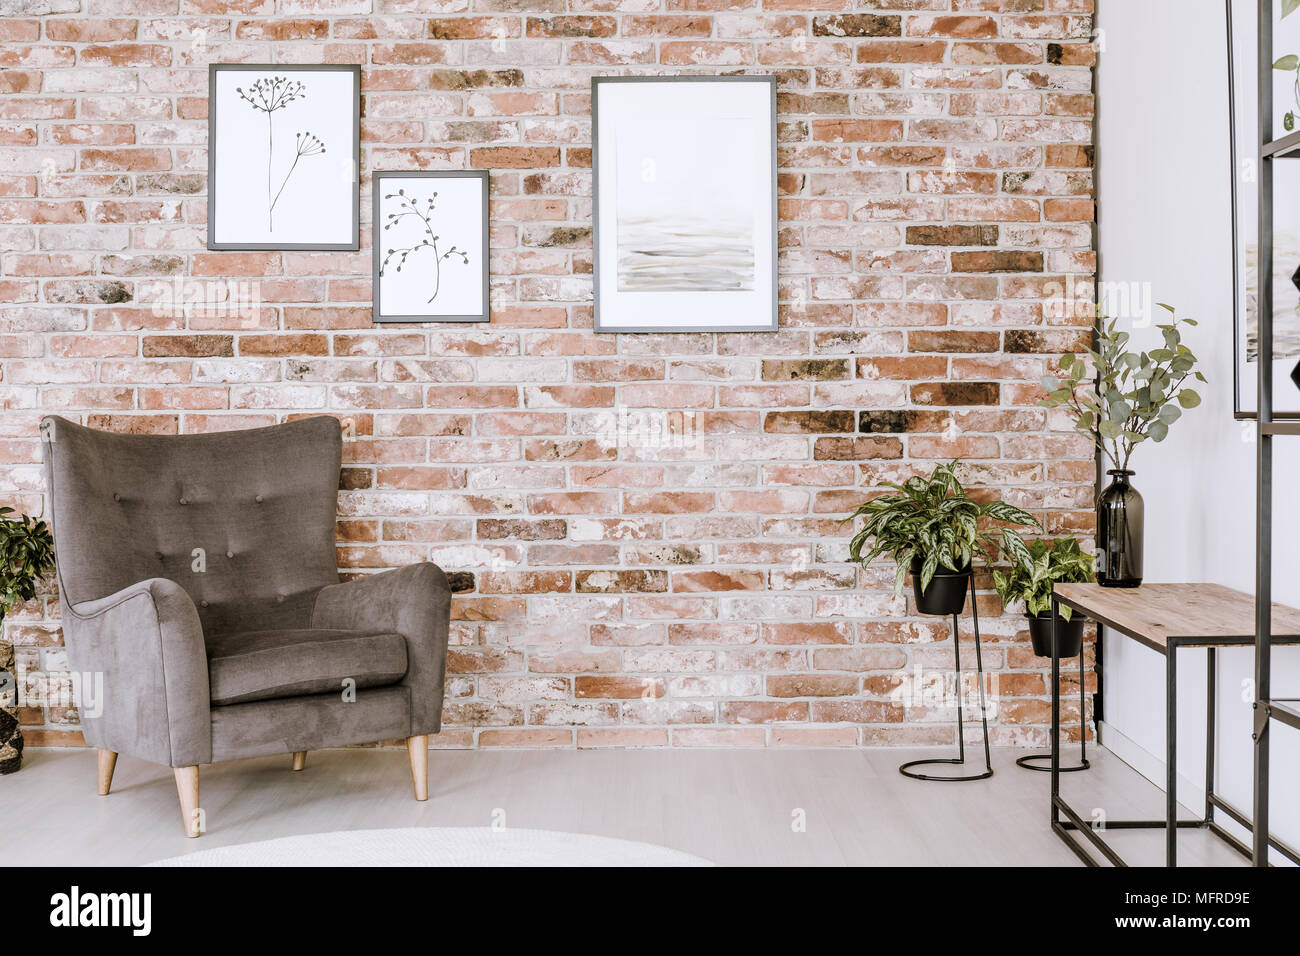 Wohnzimmer Einrichtung mit grauen Sessel, Pflanzen und Poster auf einem Red brick wall Stockfoto